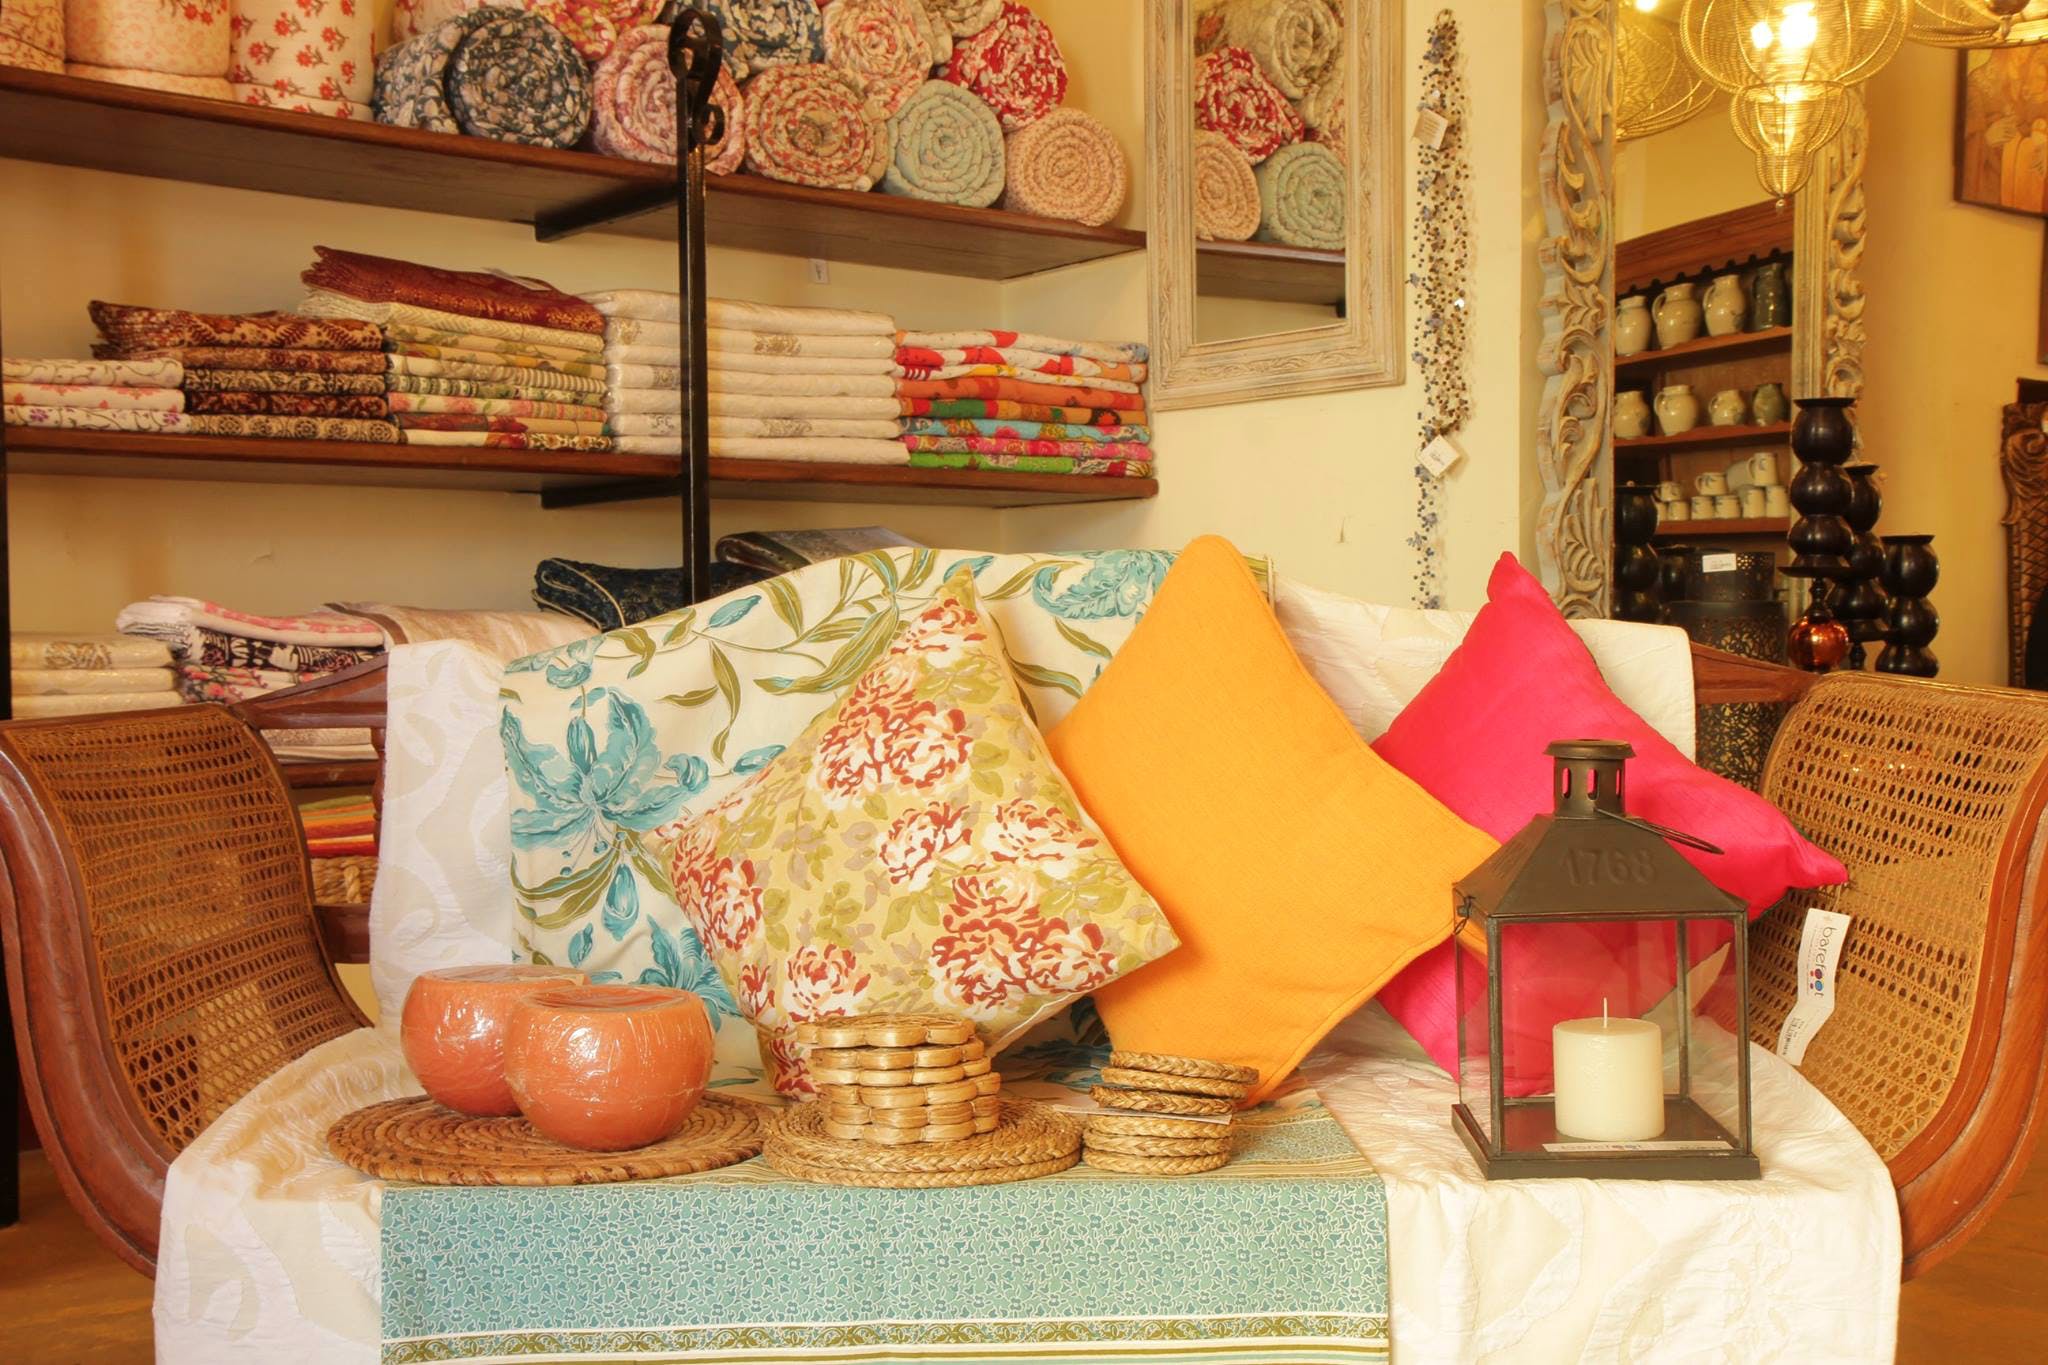 Orange,Room,Interior design,Furniture,Textile,Building,Peach,Living room,Shelf,Table